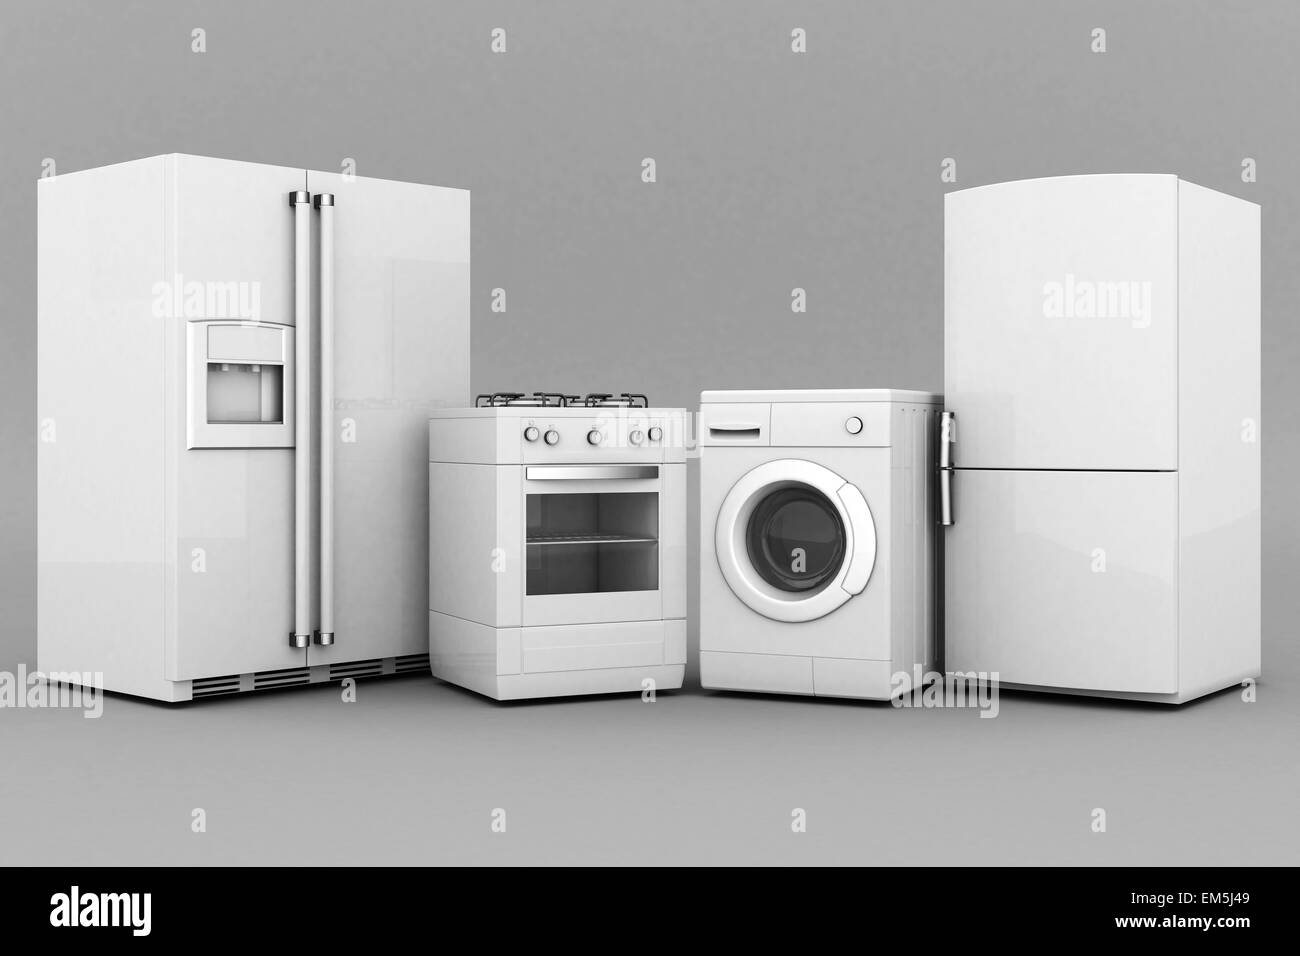 household appliances Stock Photo